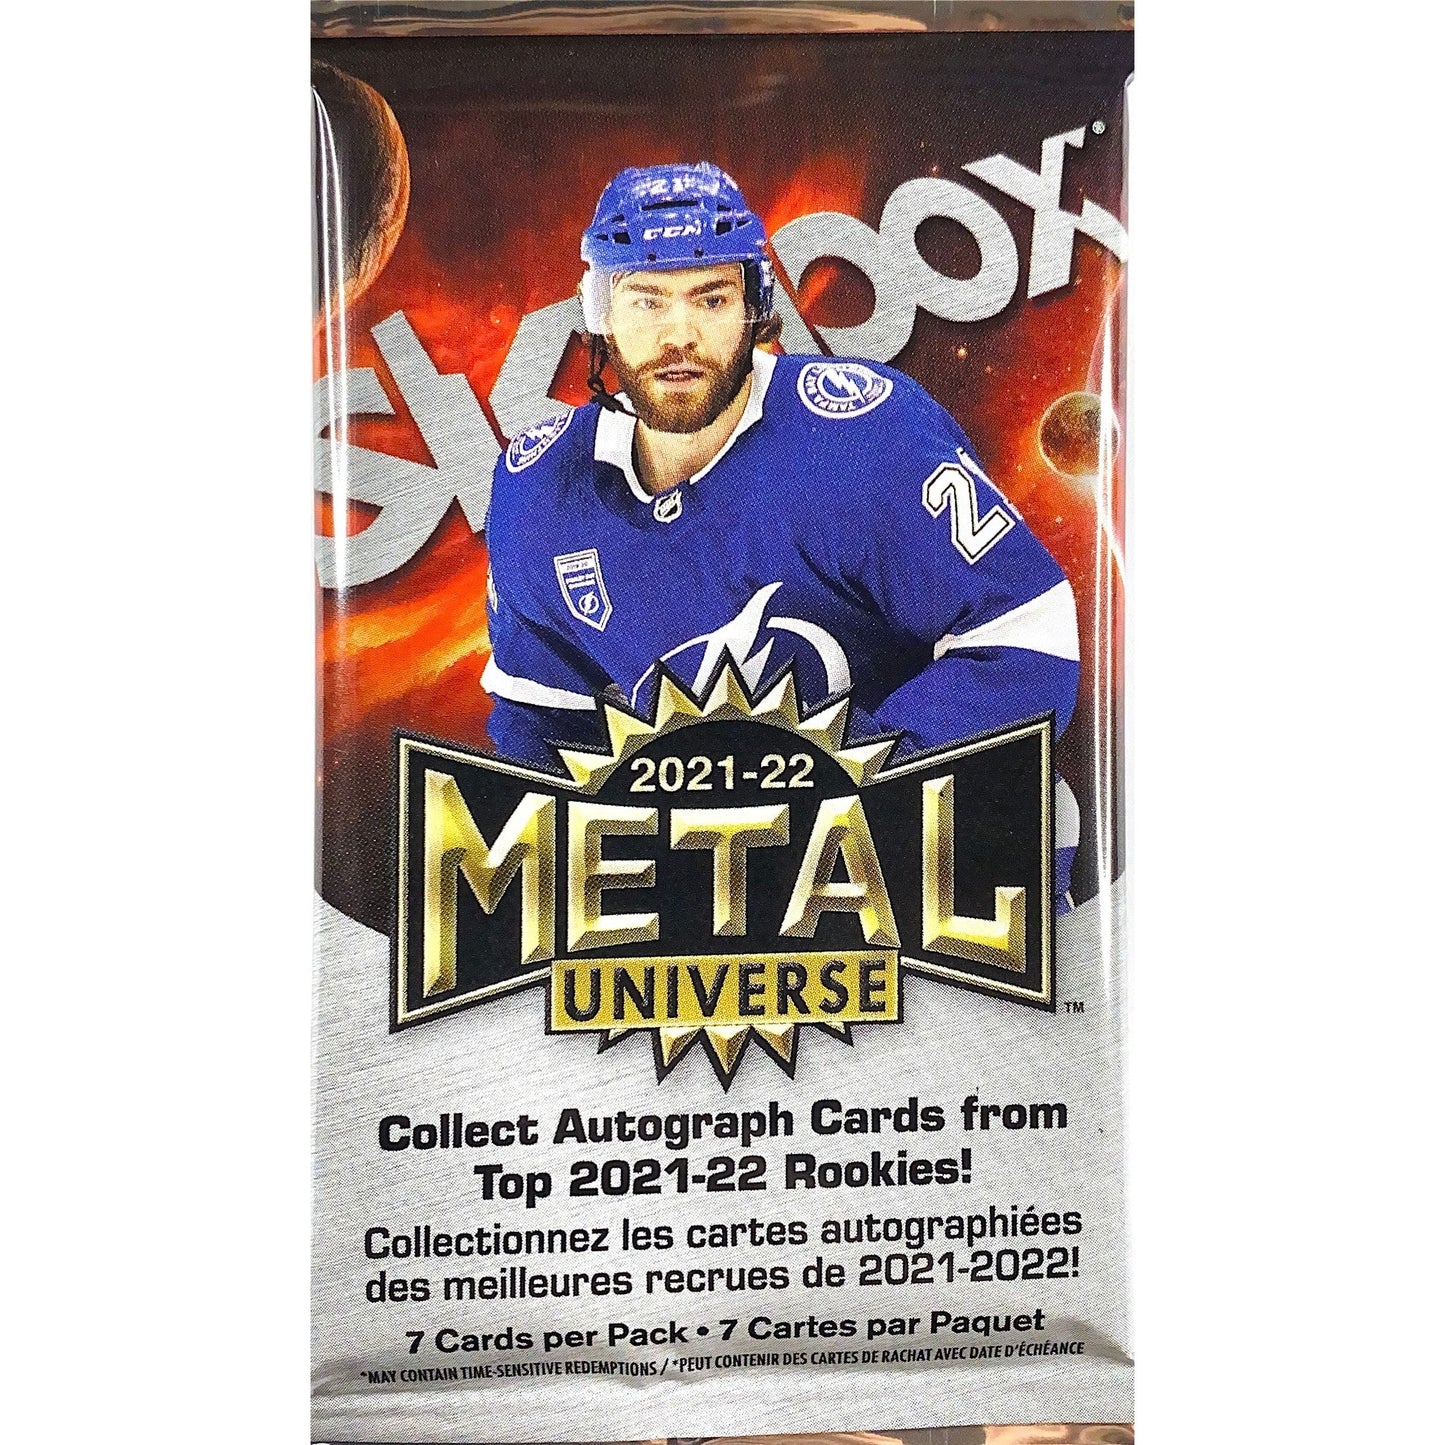 2021-22 Upper Deck Skybox Metal Universe NHL Hockey Retail Pack